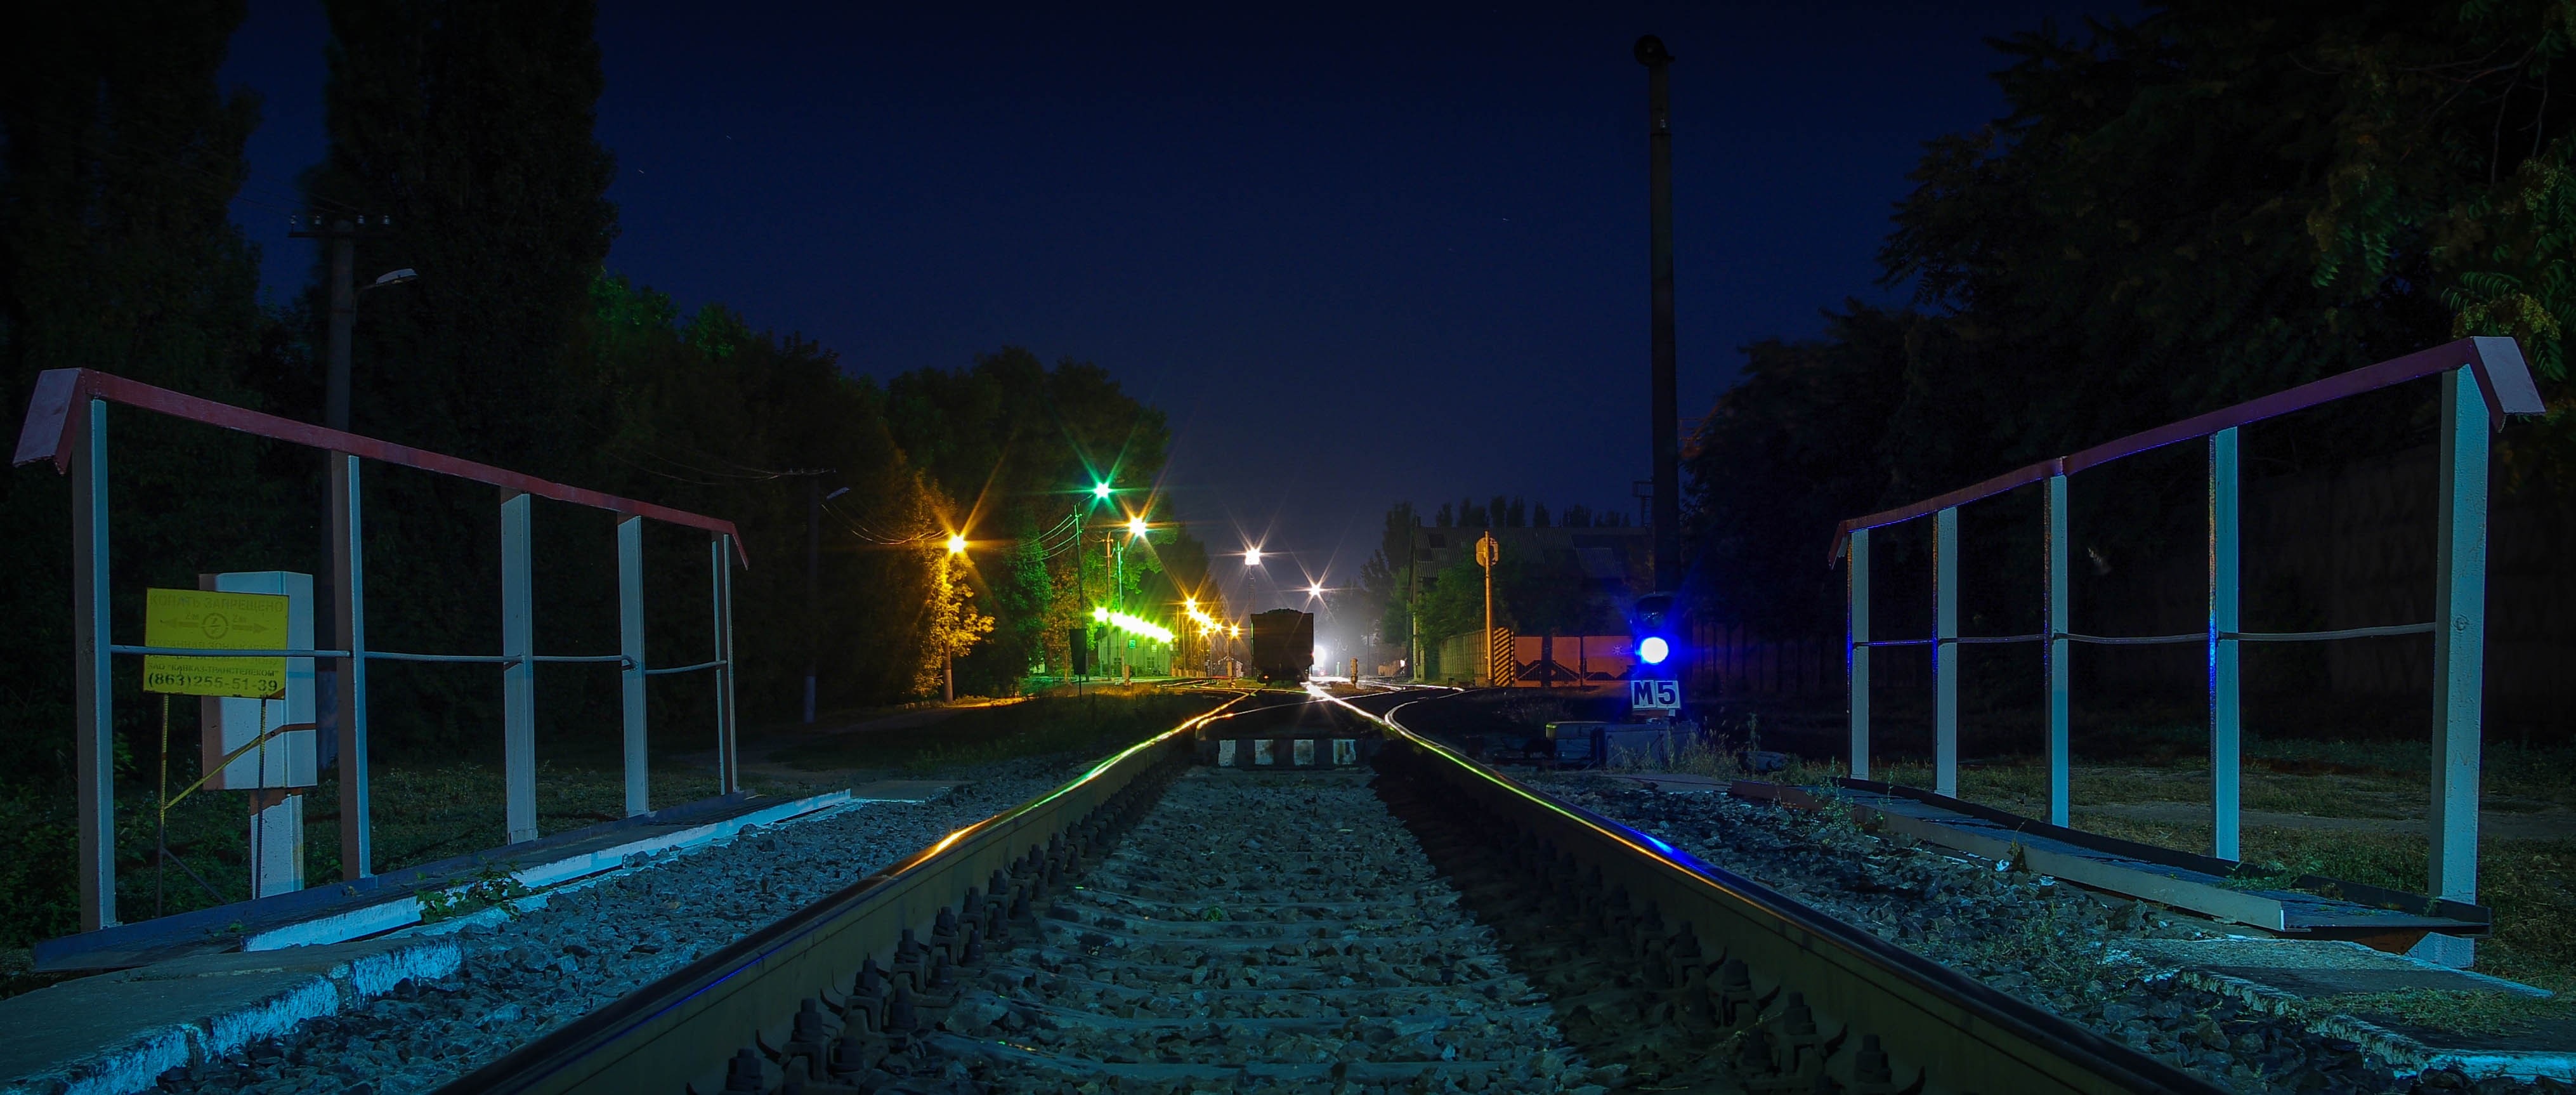 General 4061x1726 railway crossing night lights metal railway